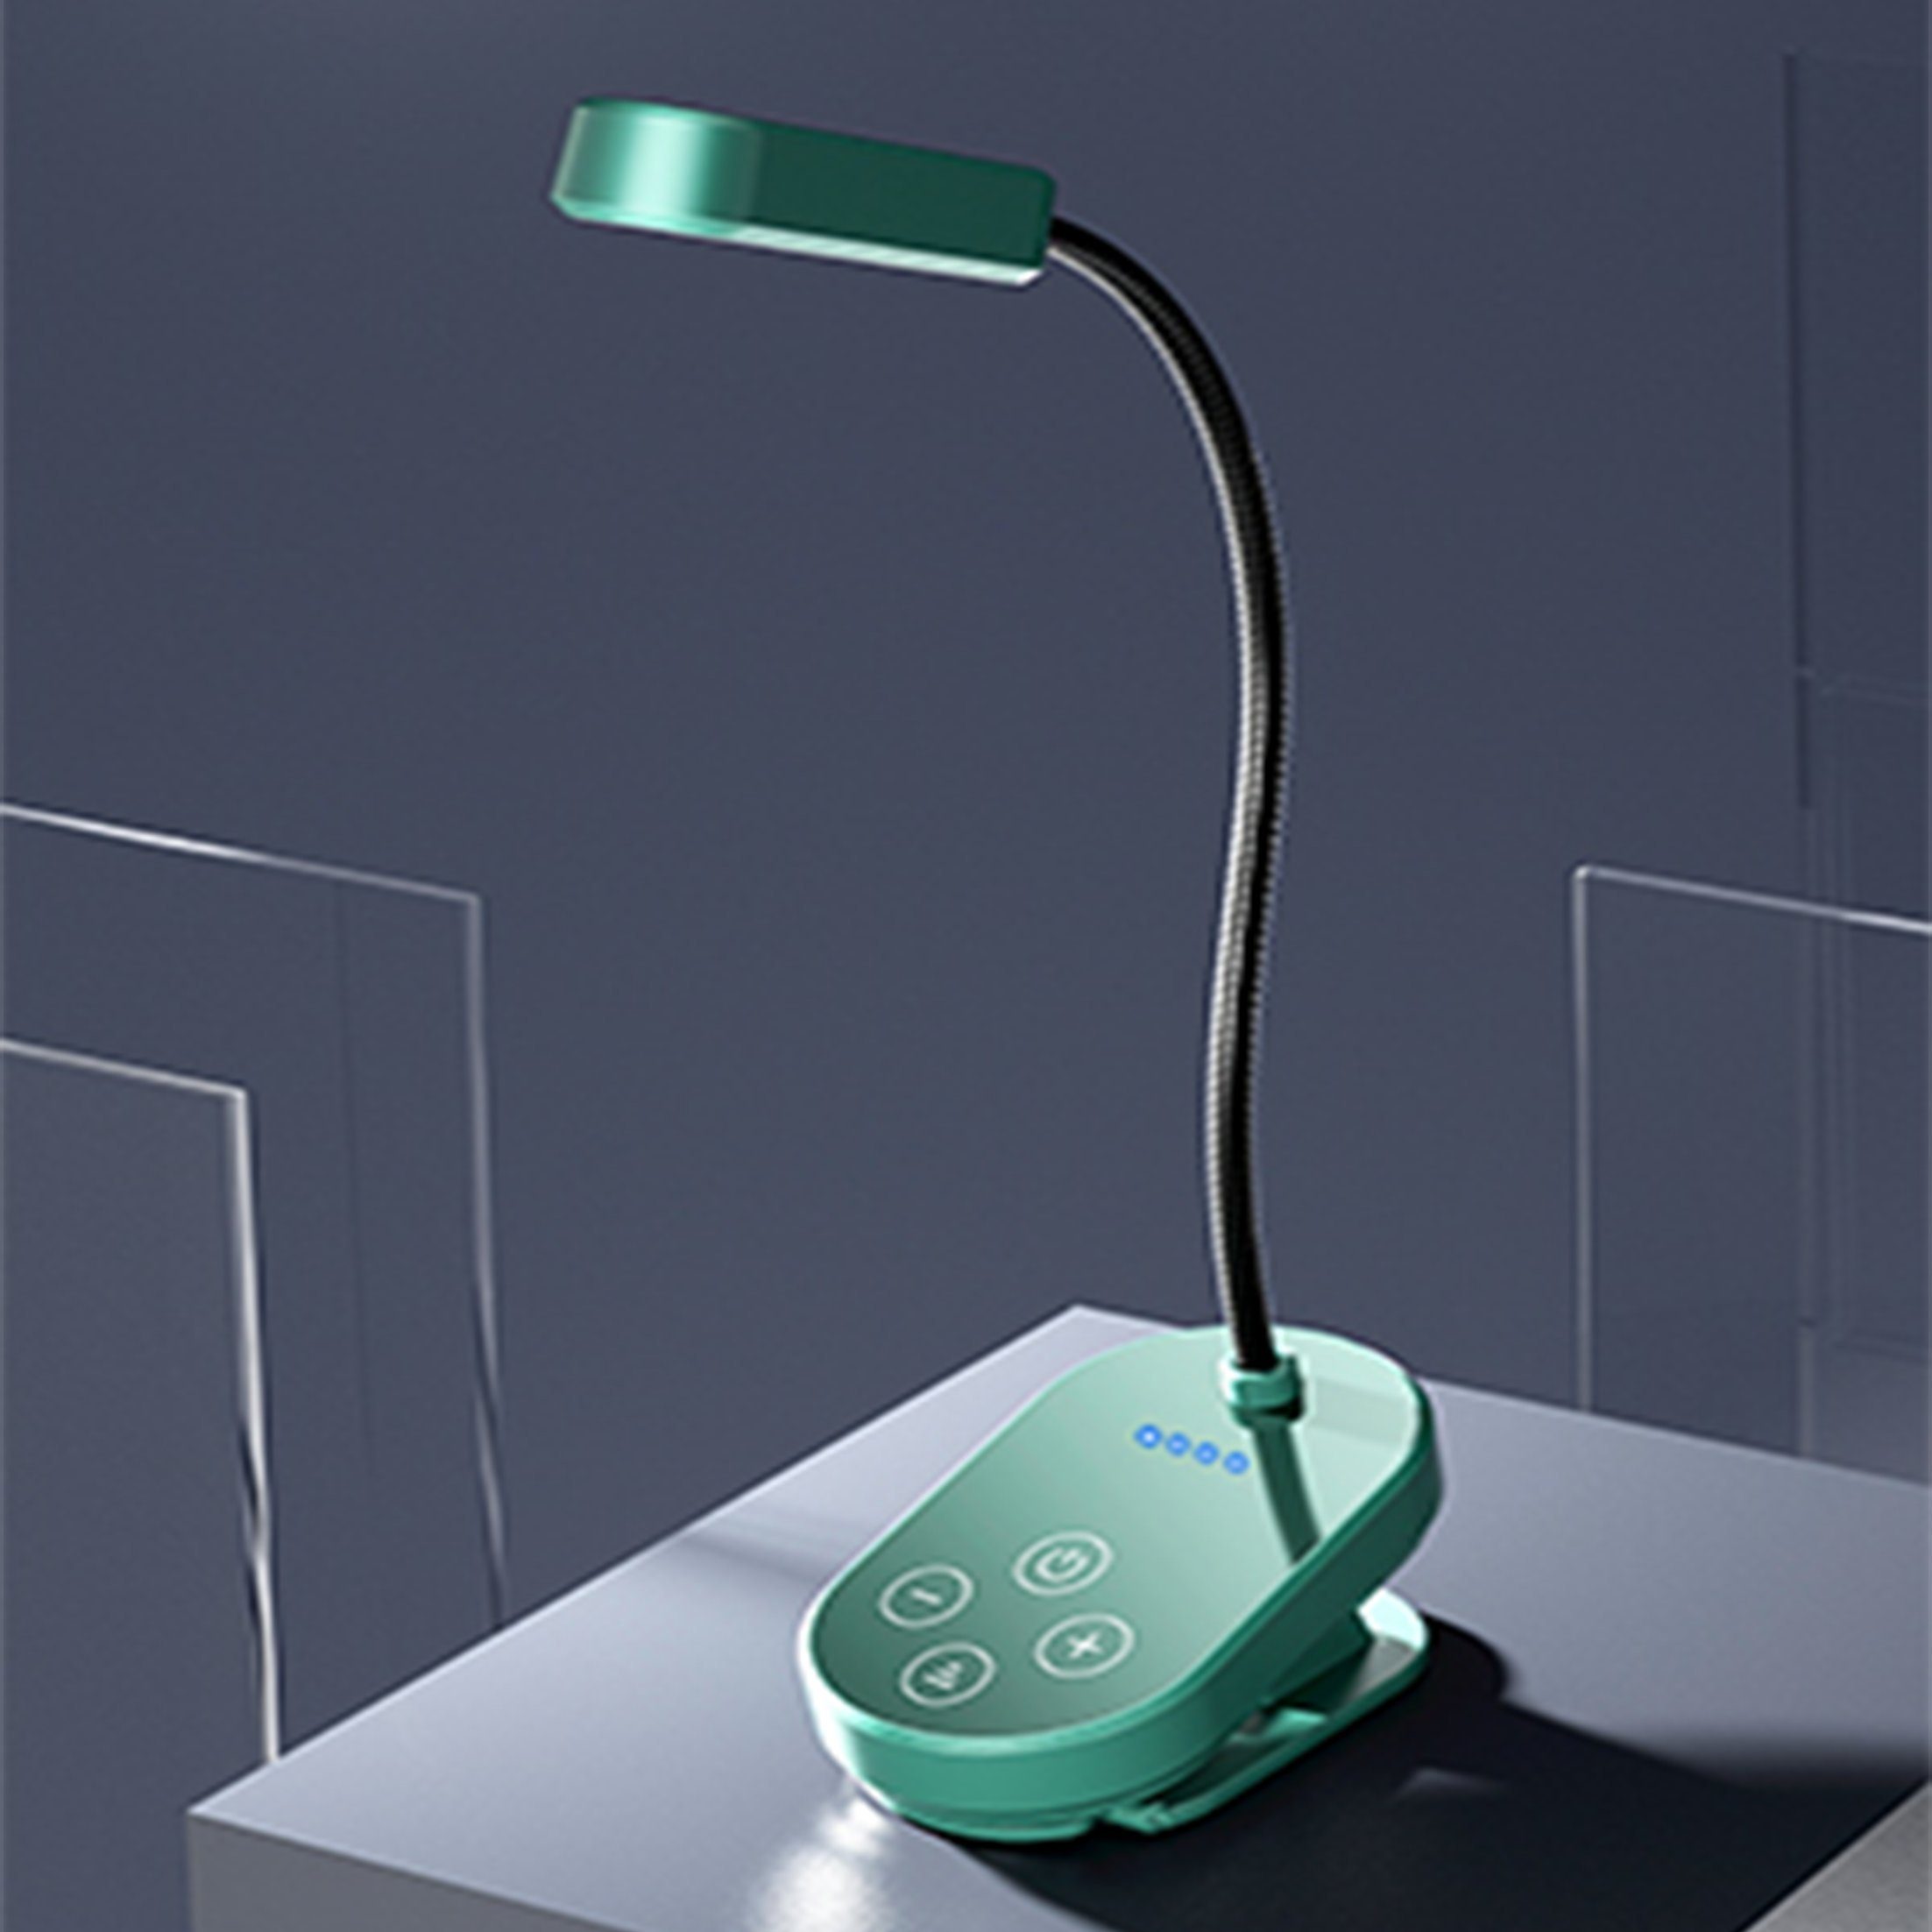 Lampe,Buchlicht,LED-Mini-Clip-On-Buchlicht,wiederaufladbar,Augenschutz Grün LED LANOR Schreibtischlampe